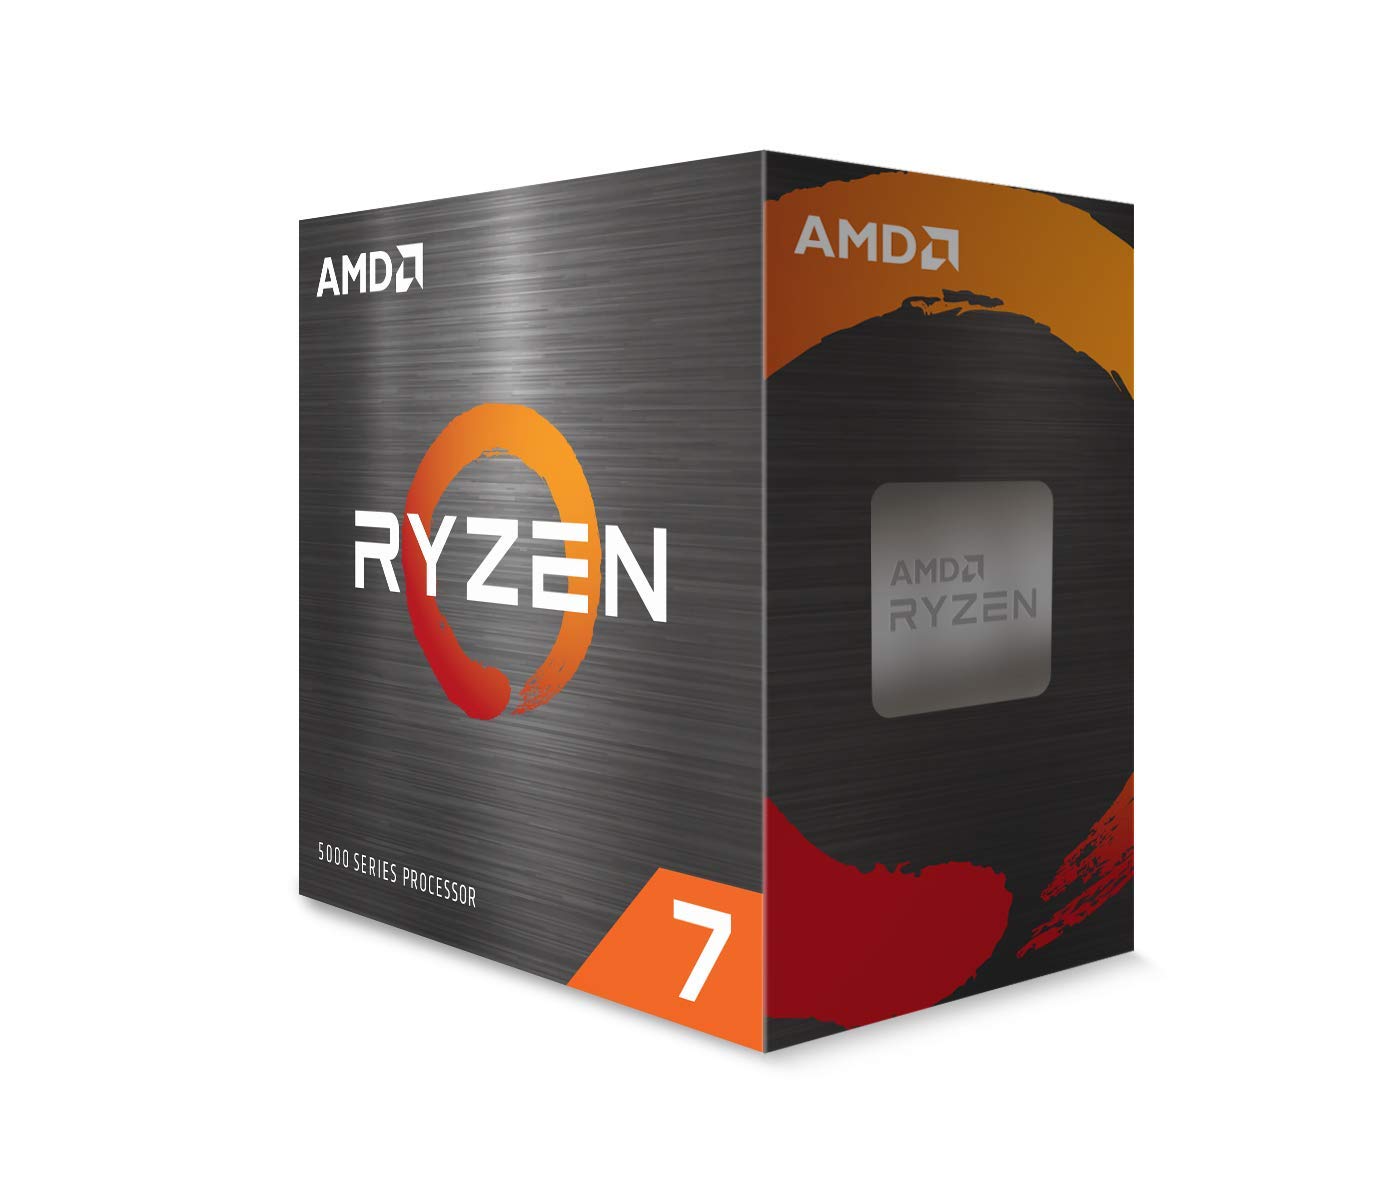 AMD Ryzen 7 5800X3D 3.4GHz 8C/16T Desktop CPU $189